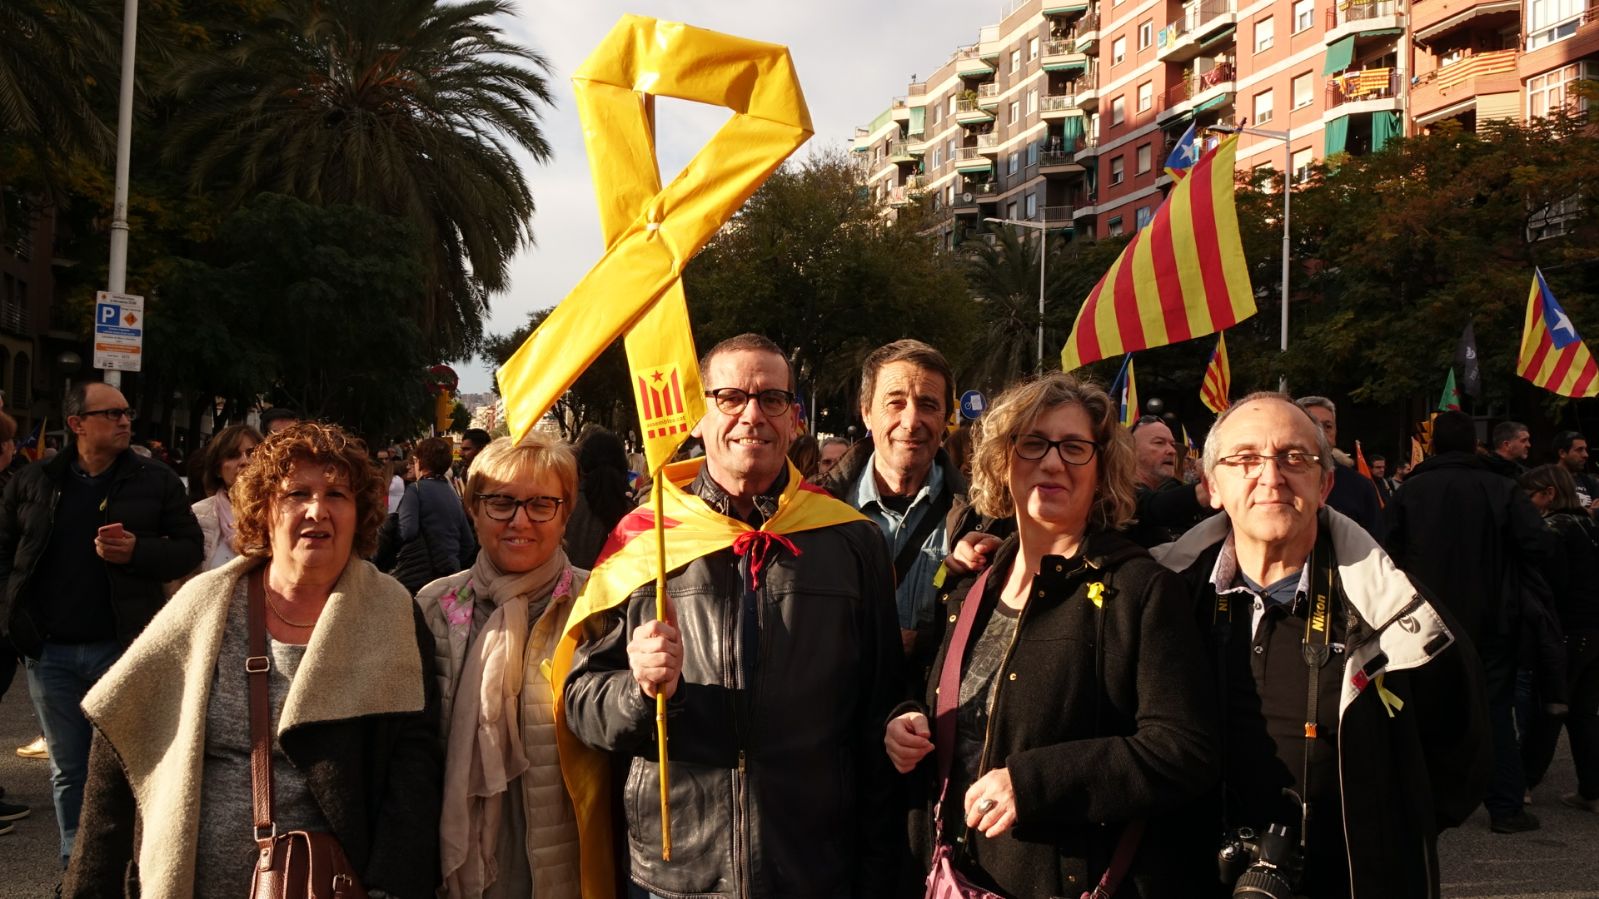 Barcelona iluminará lugares públicos de amarillo por los presos políticos